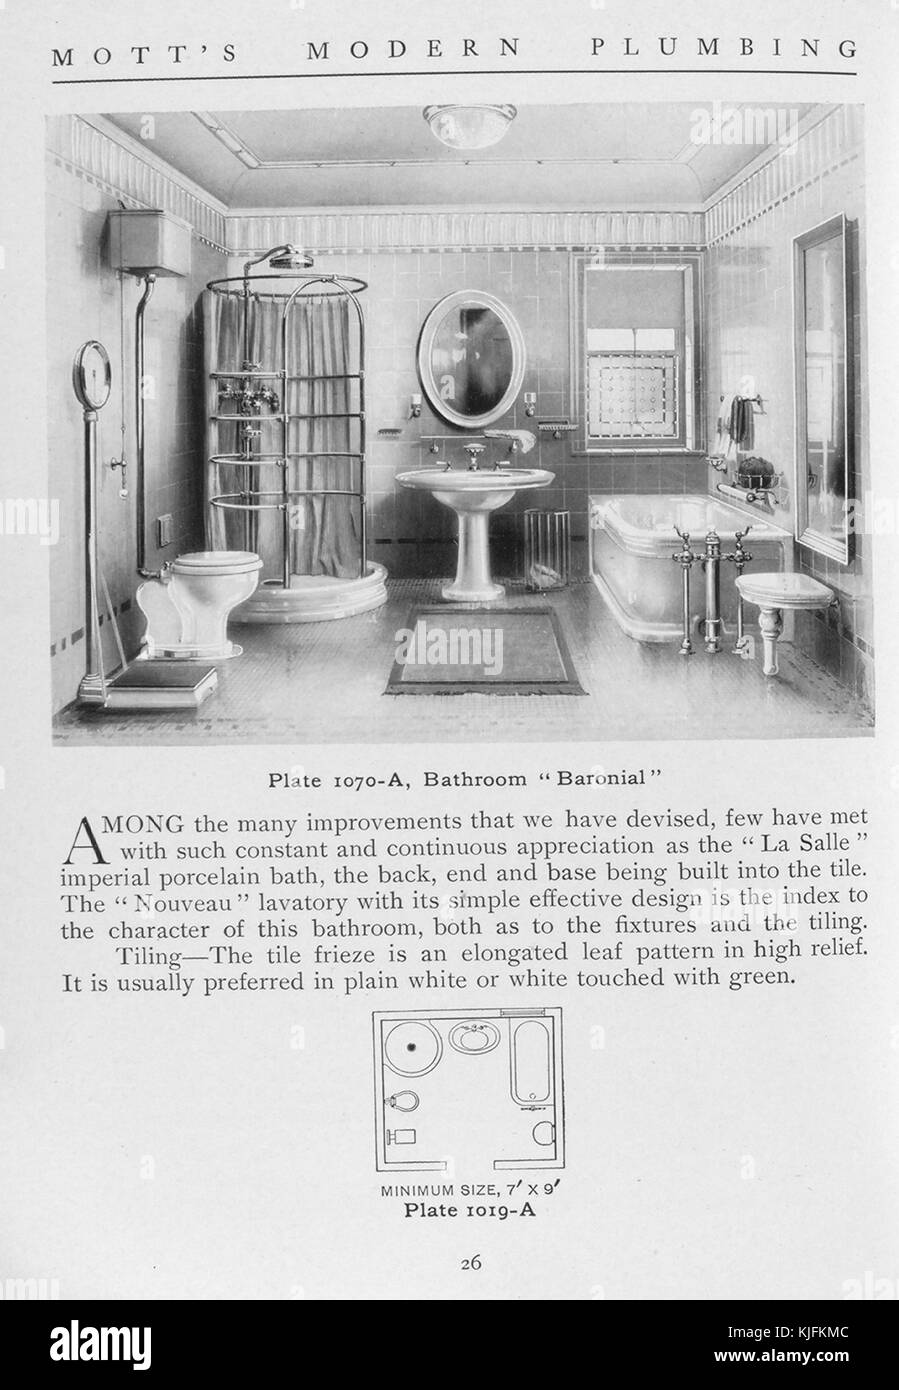 Badezimmer, fürstlichen Stil, 1911. Von der New York Public Library. Diese Platte ist von motts modern Plumbing, ein Katalog mit verschiedenen Stilen von Badarmaturen. Stockfoto